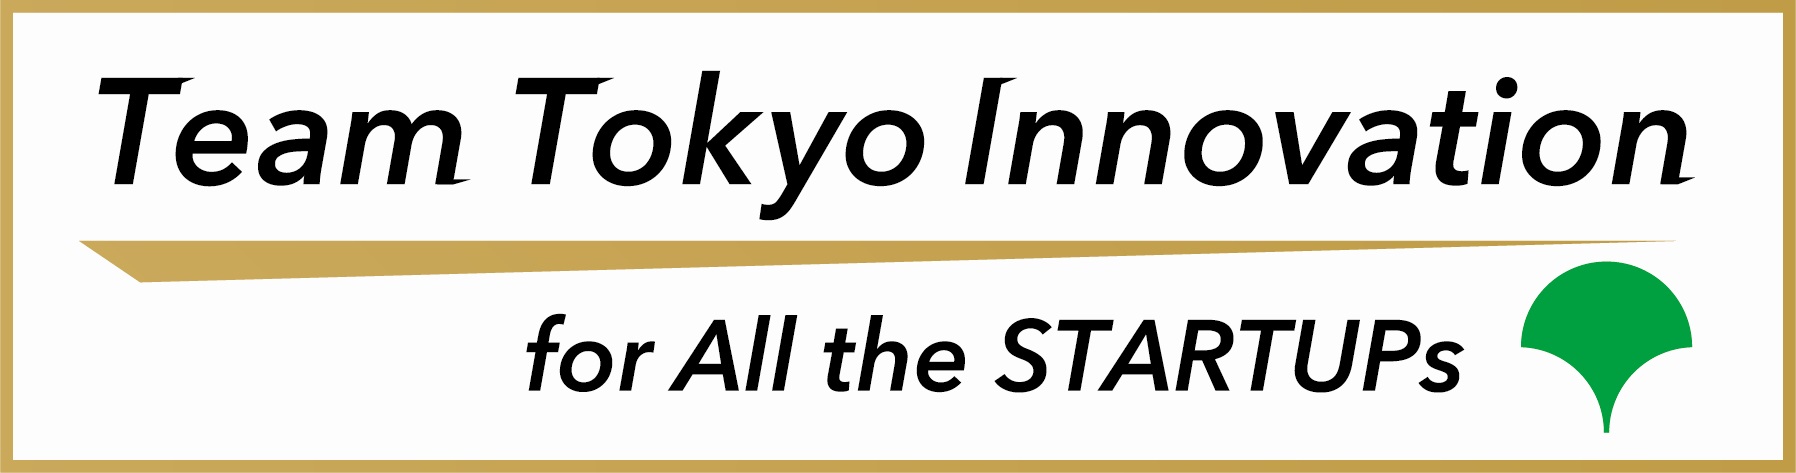 Team Tokyo Innovation